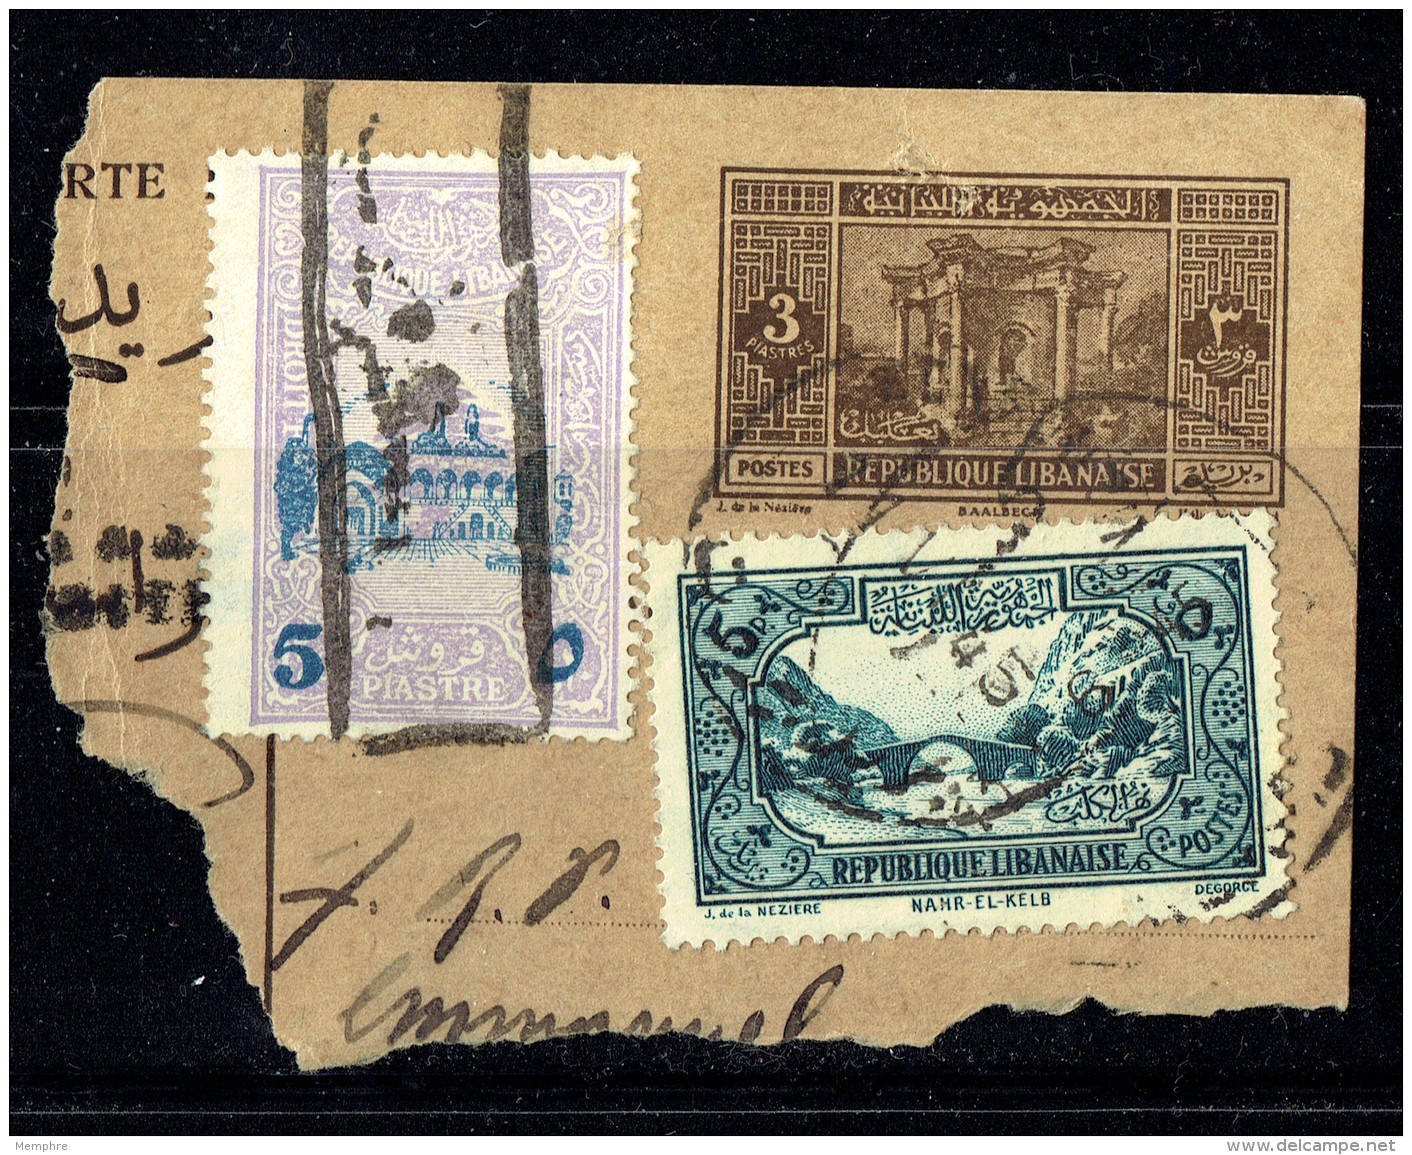 1945   Fragment De Carte Postale Avec Timbre Supplémentaire Et Timbre Fiscal Surchargé - Storia Postale